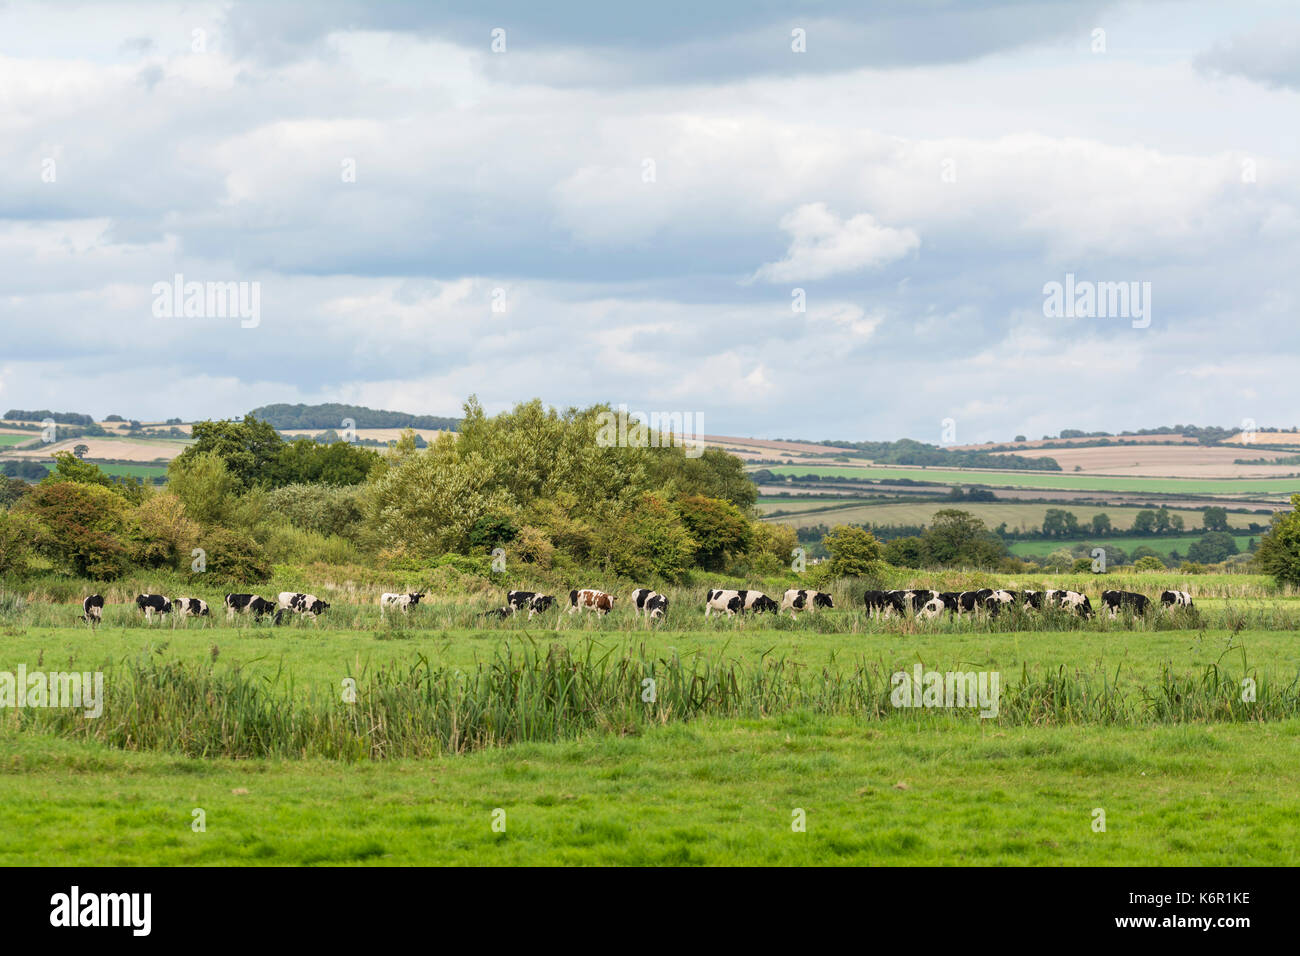 Mandria di mucche in un campo nel West Sussex campagna inizio autunno con il South Downs in background in Arundel, West Sussex, in Inghilterra, Regno Unito. Foto Stock